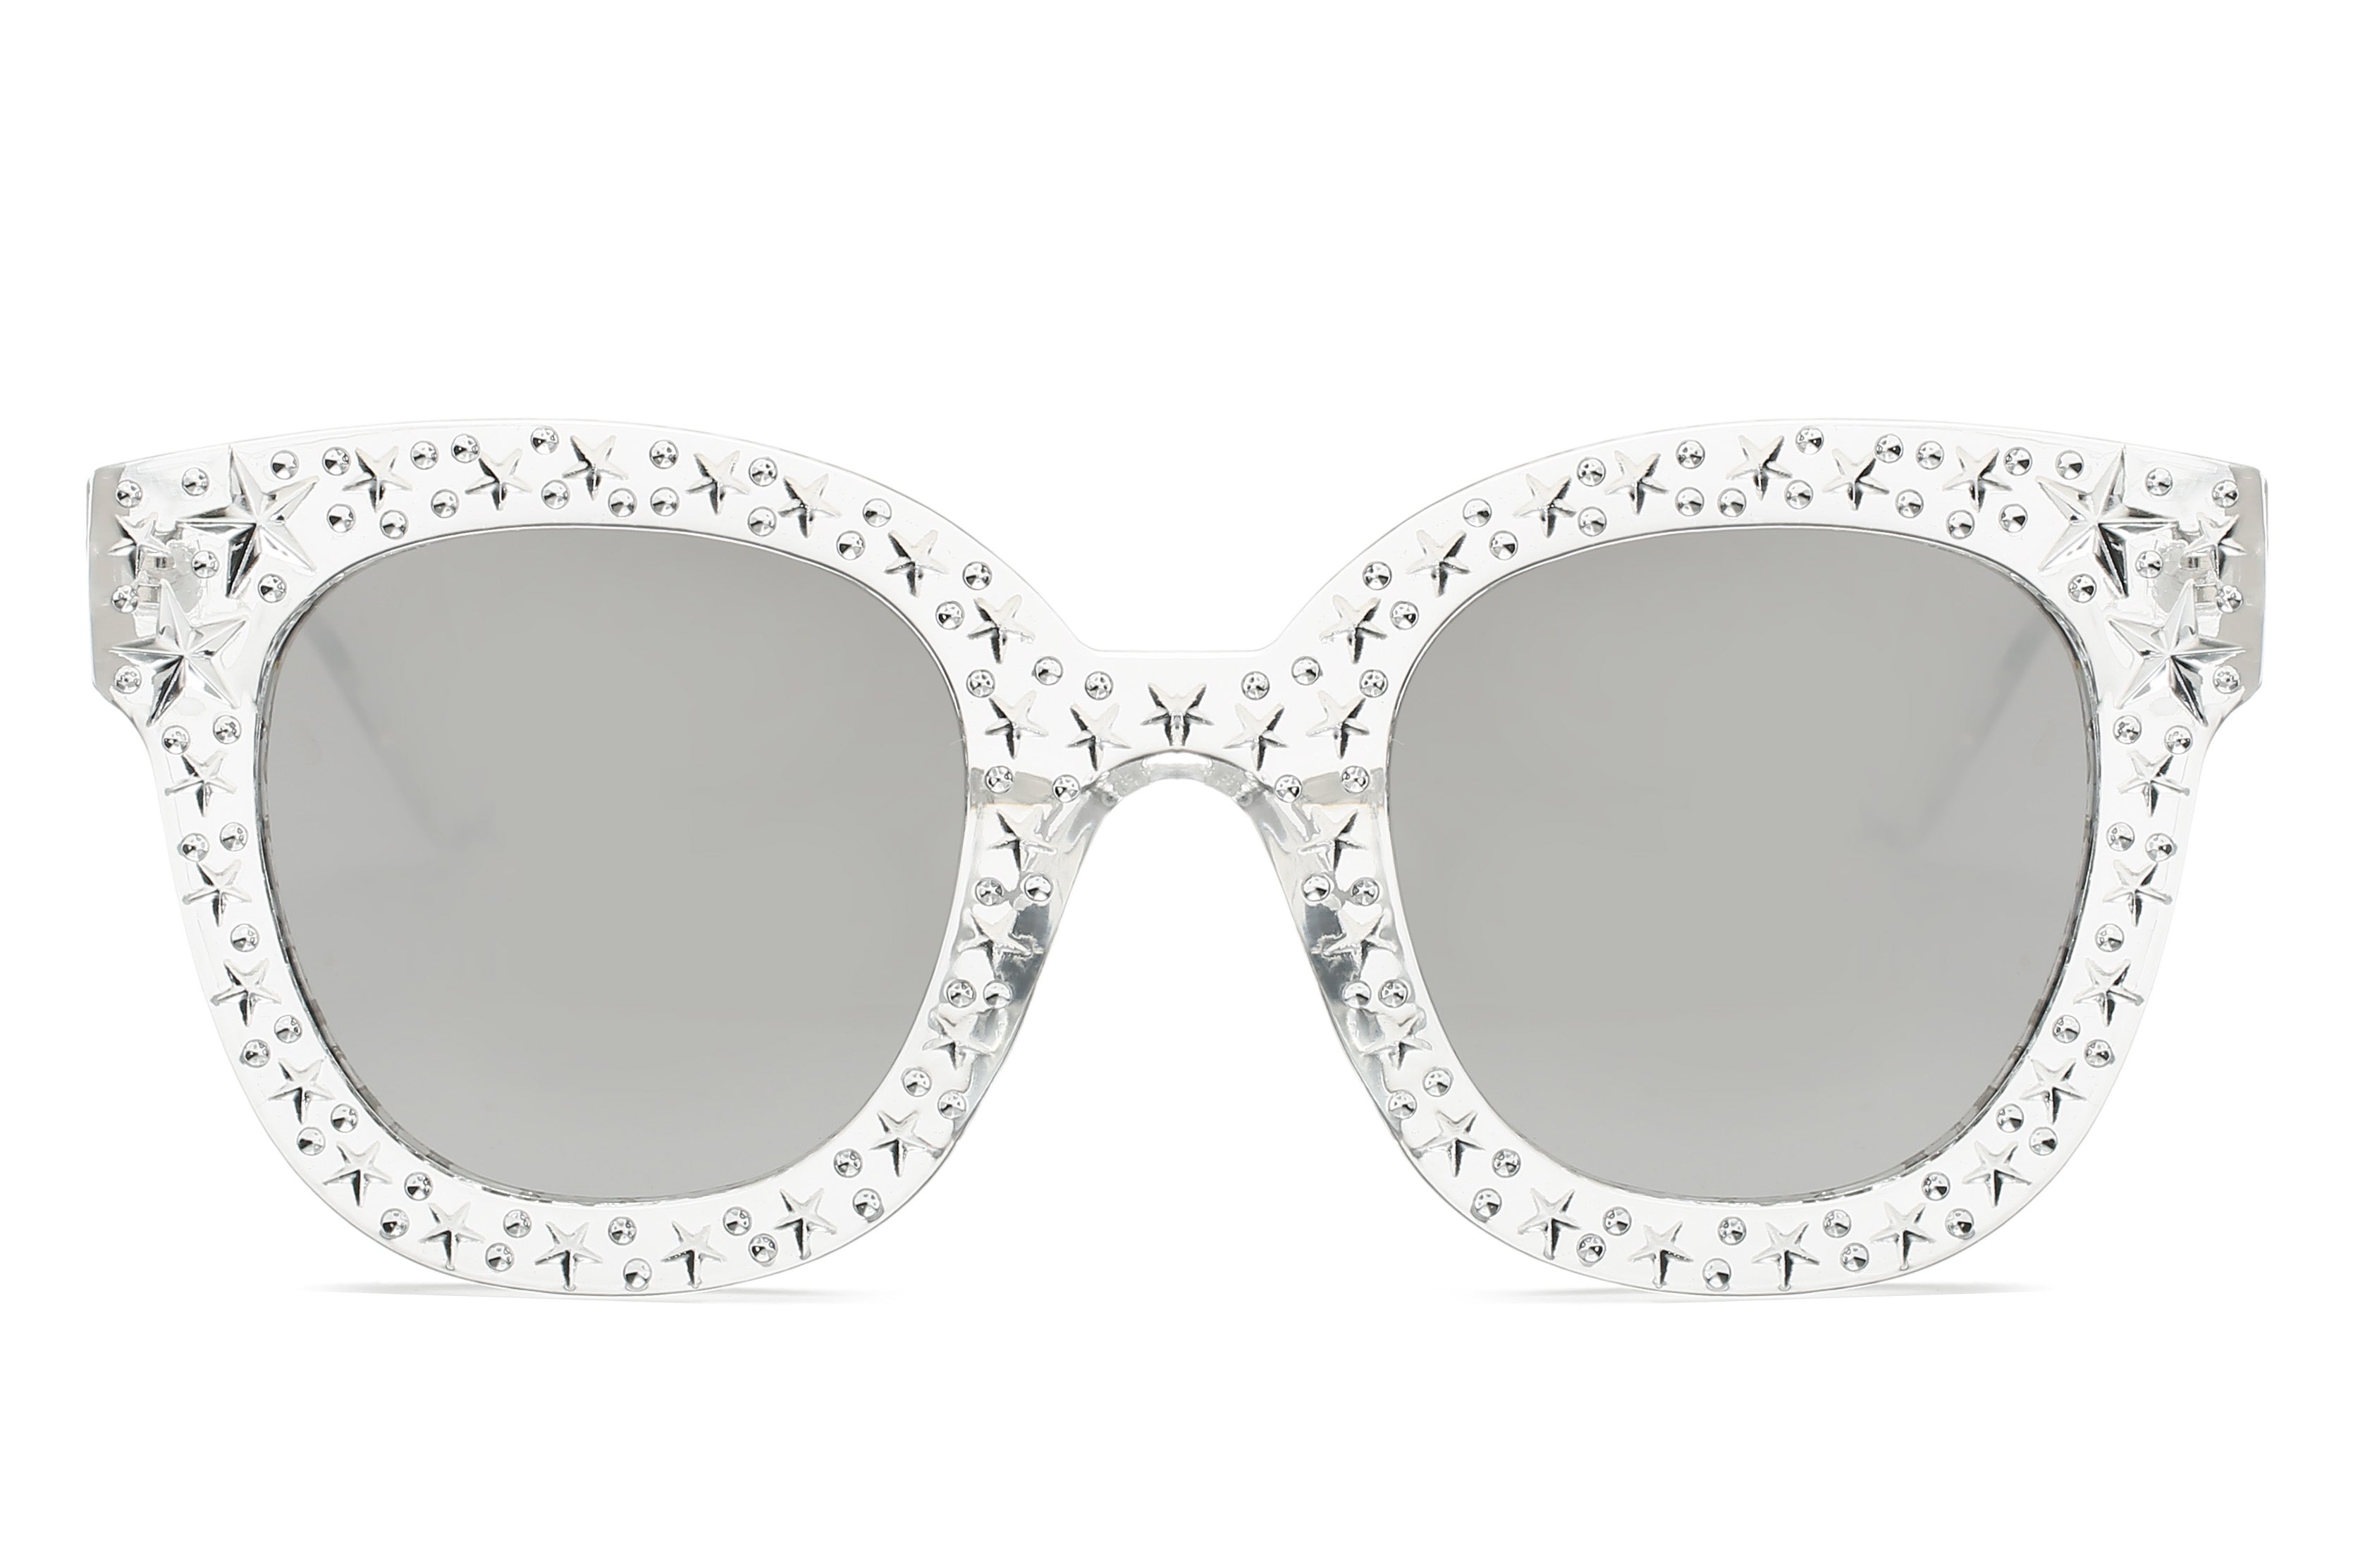 S1087 - Women Fashion Oversize Round Sunglasses Clear/Smoke